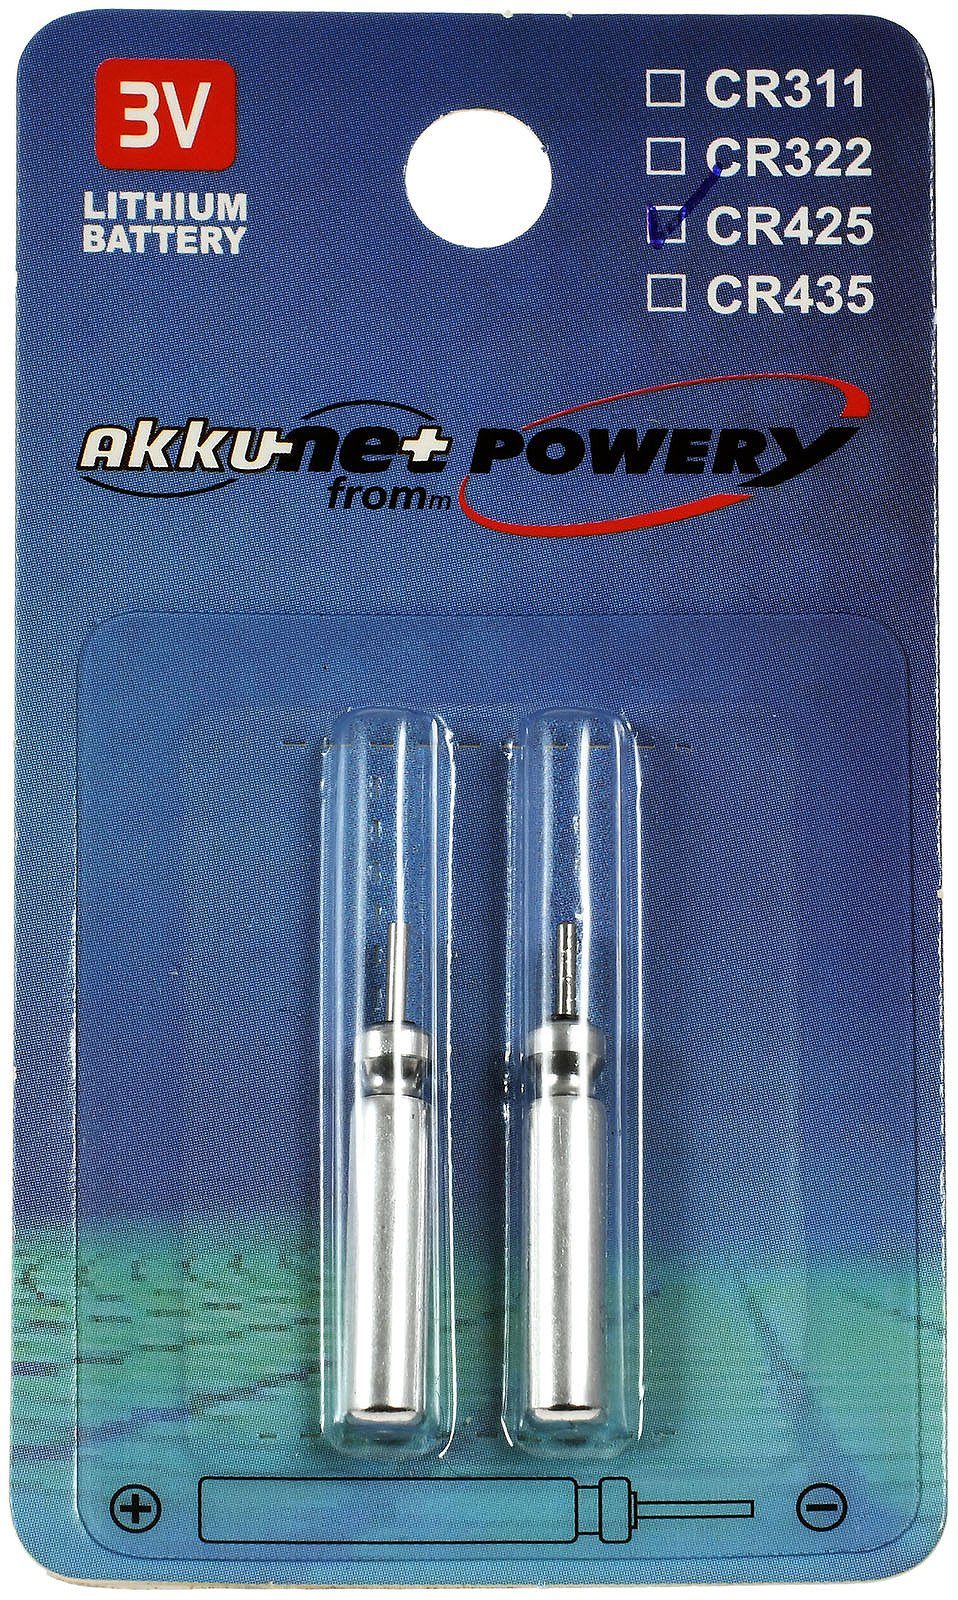 Powery Lithiumbatterie CR425 für Elektro Posen, Angelposen 2er Blister Batterie, (3 V)